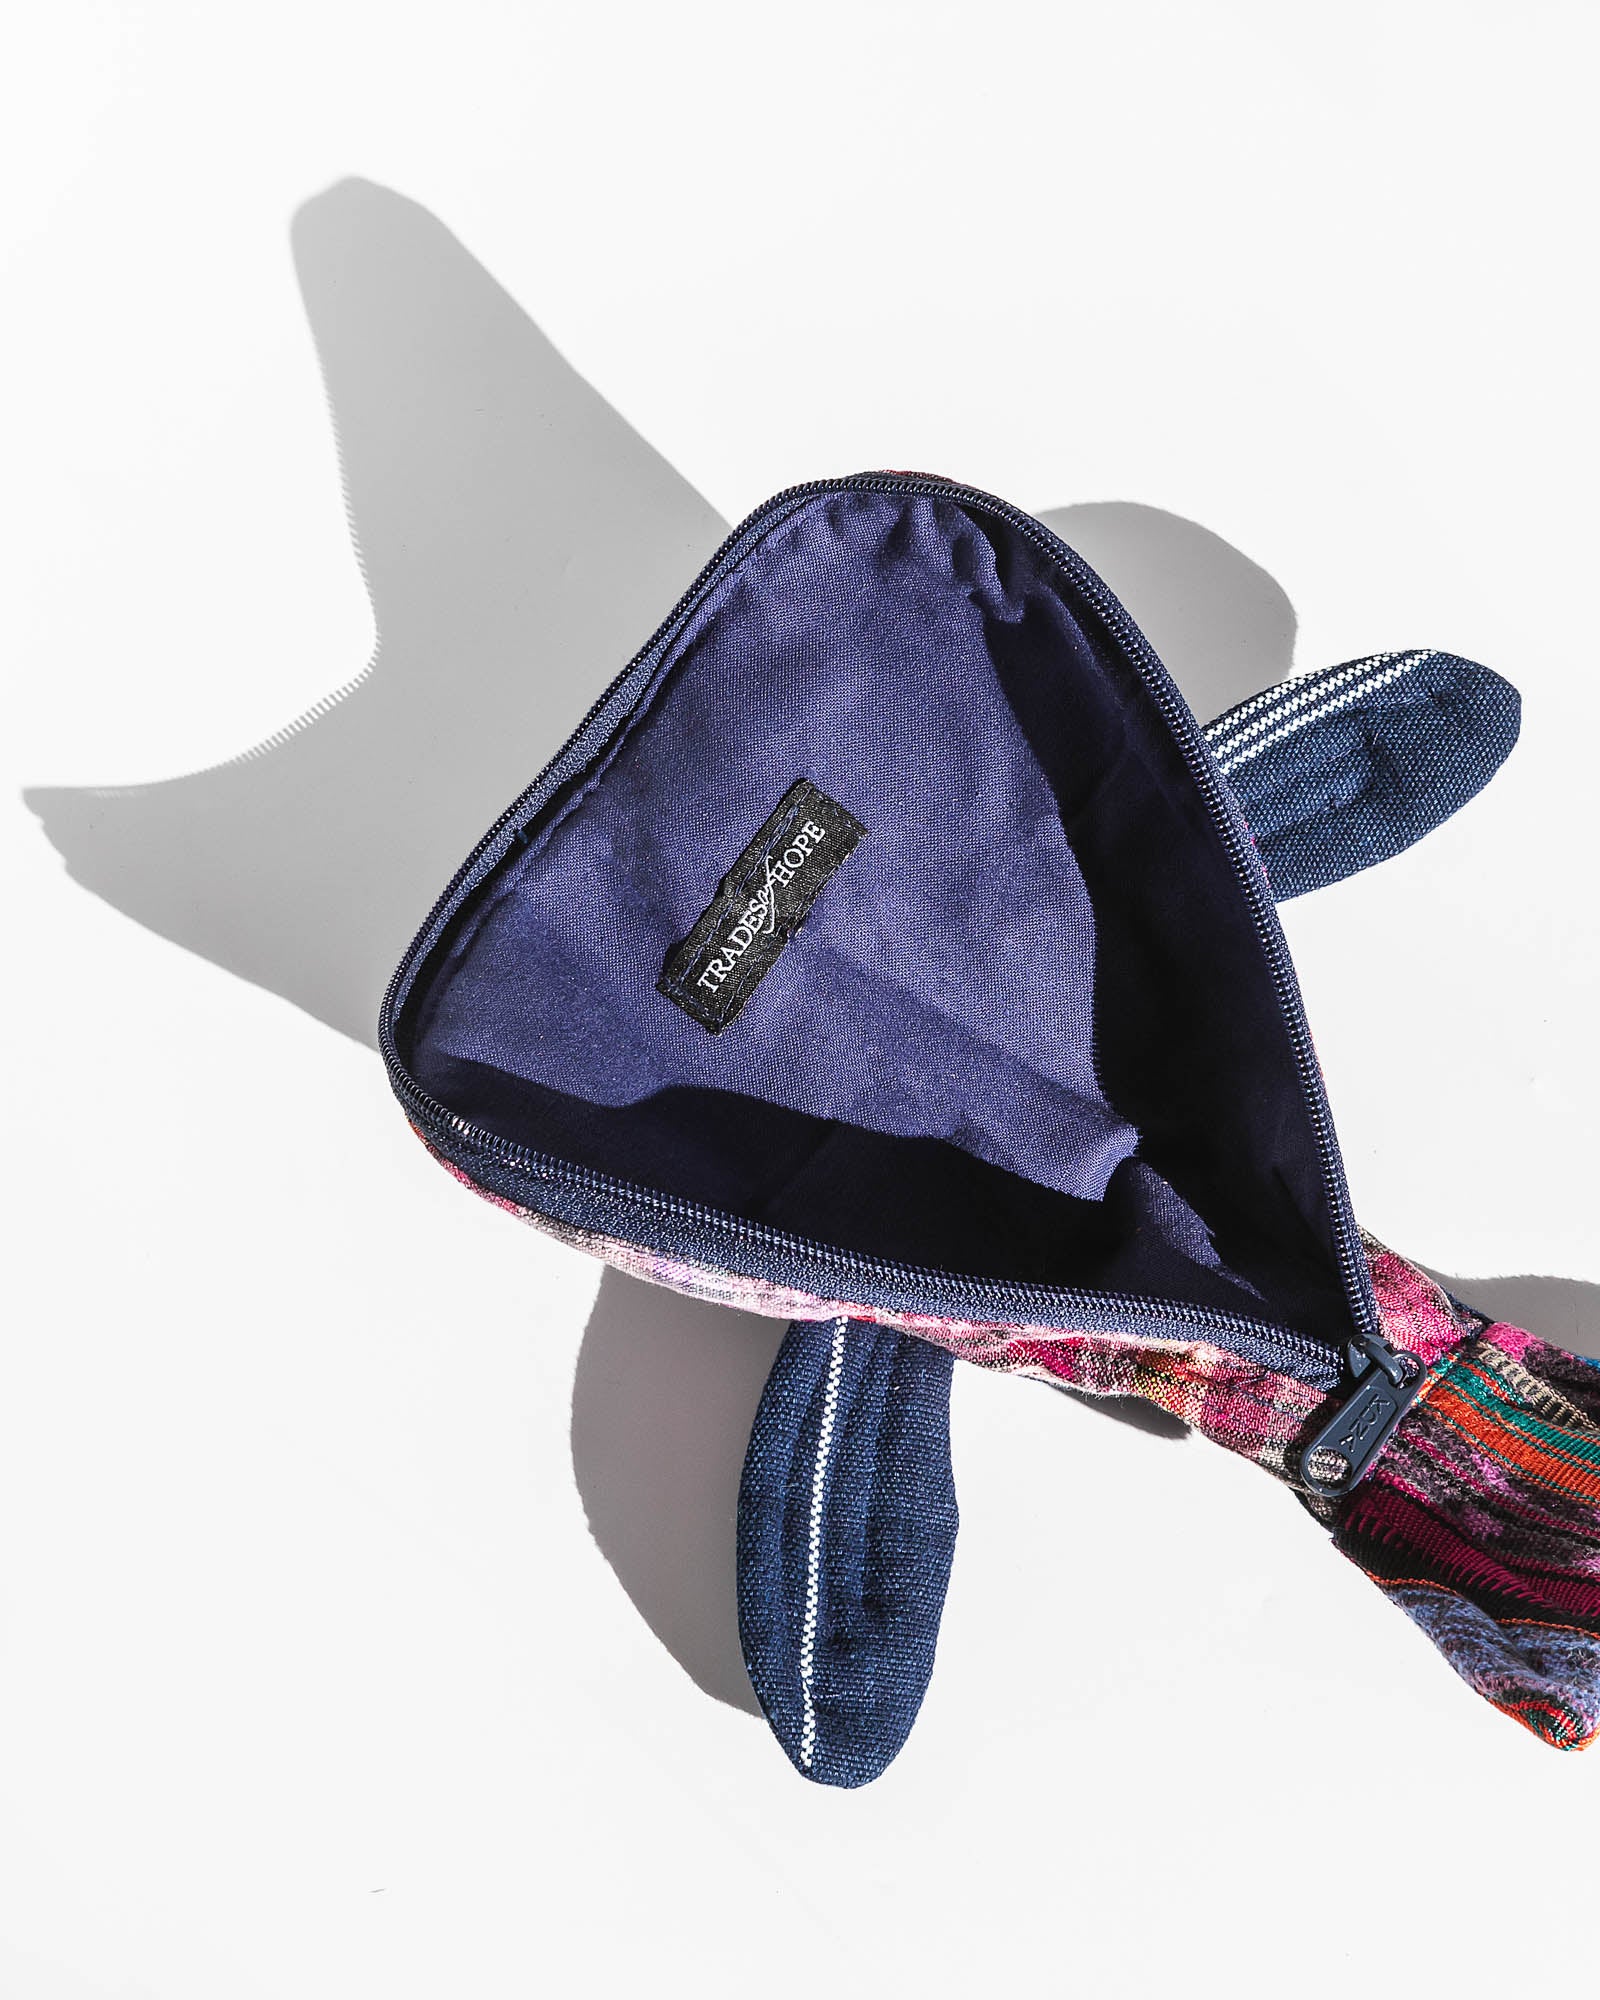 fair-trade-bags-tipico-whale-pouch-2.jpg